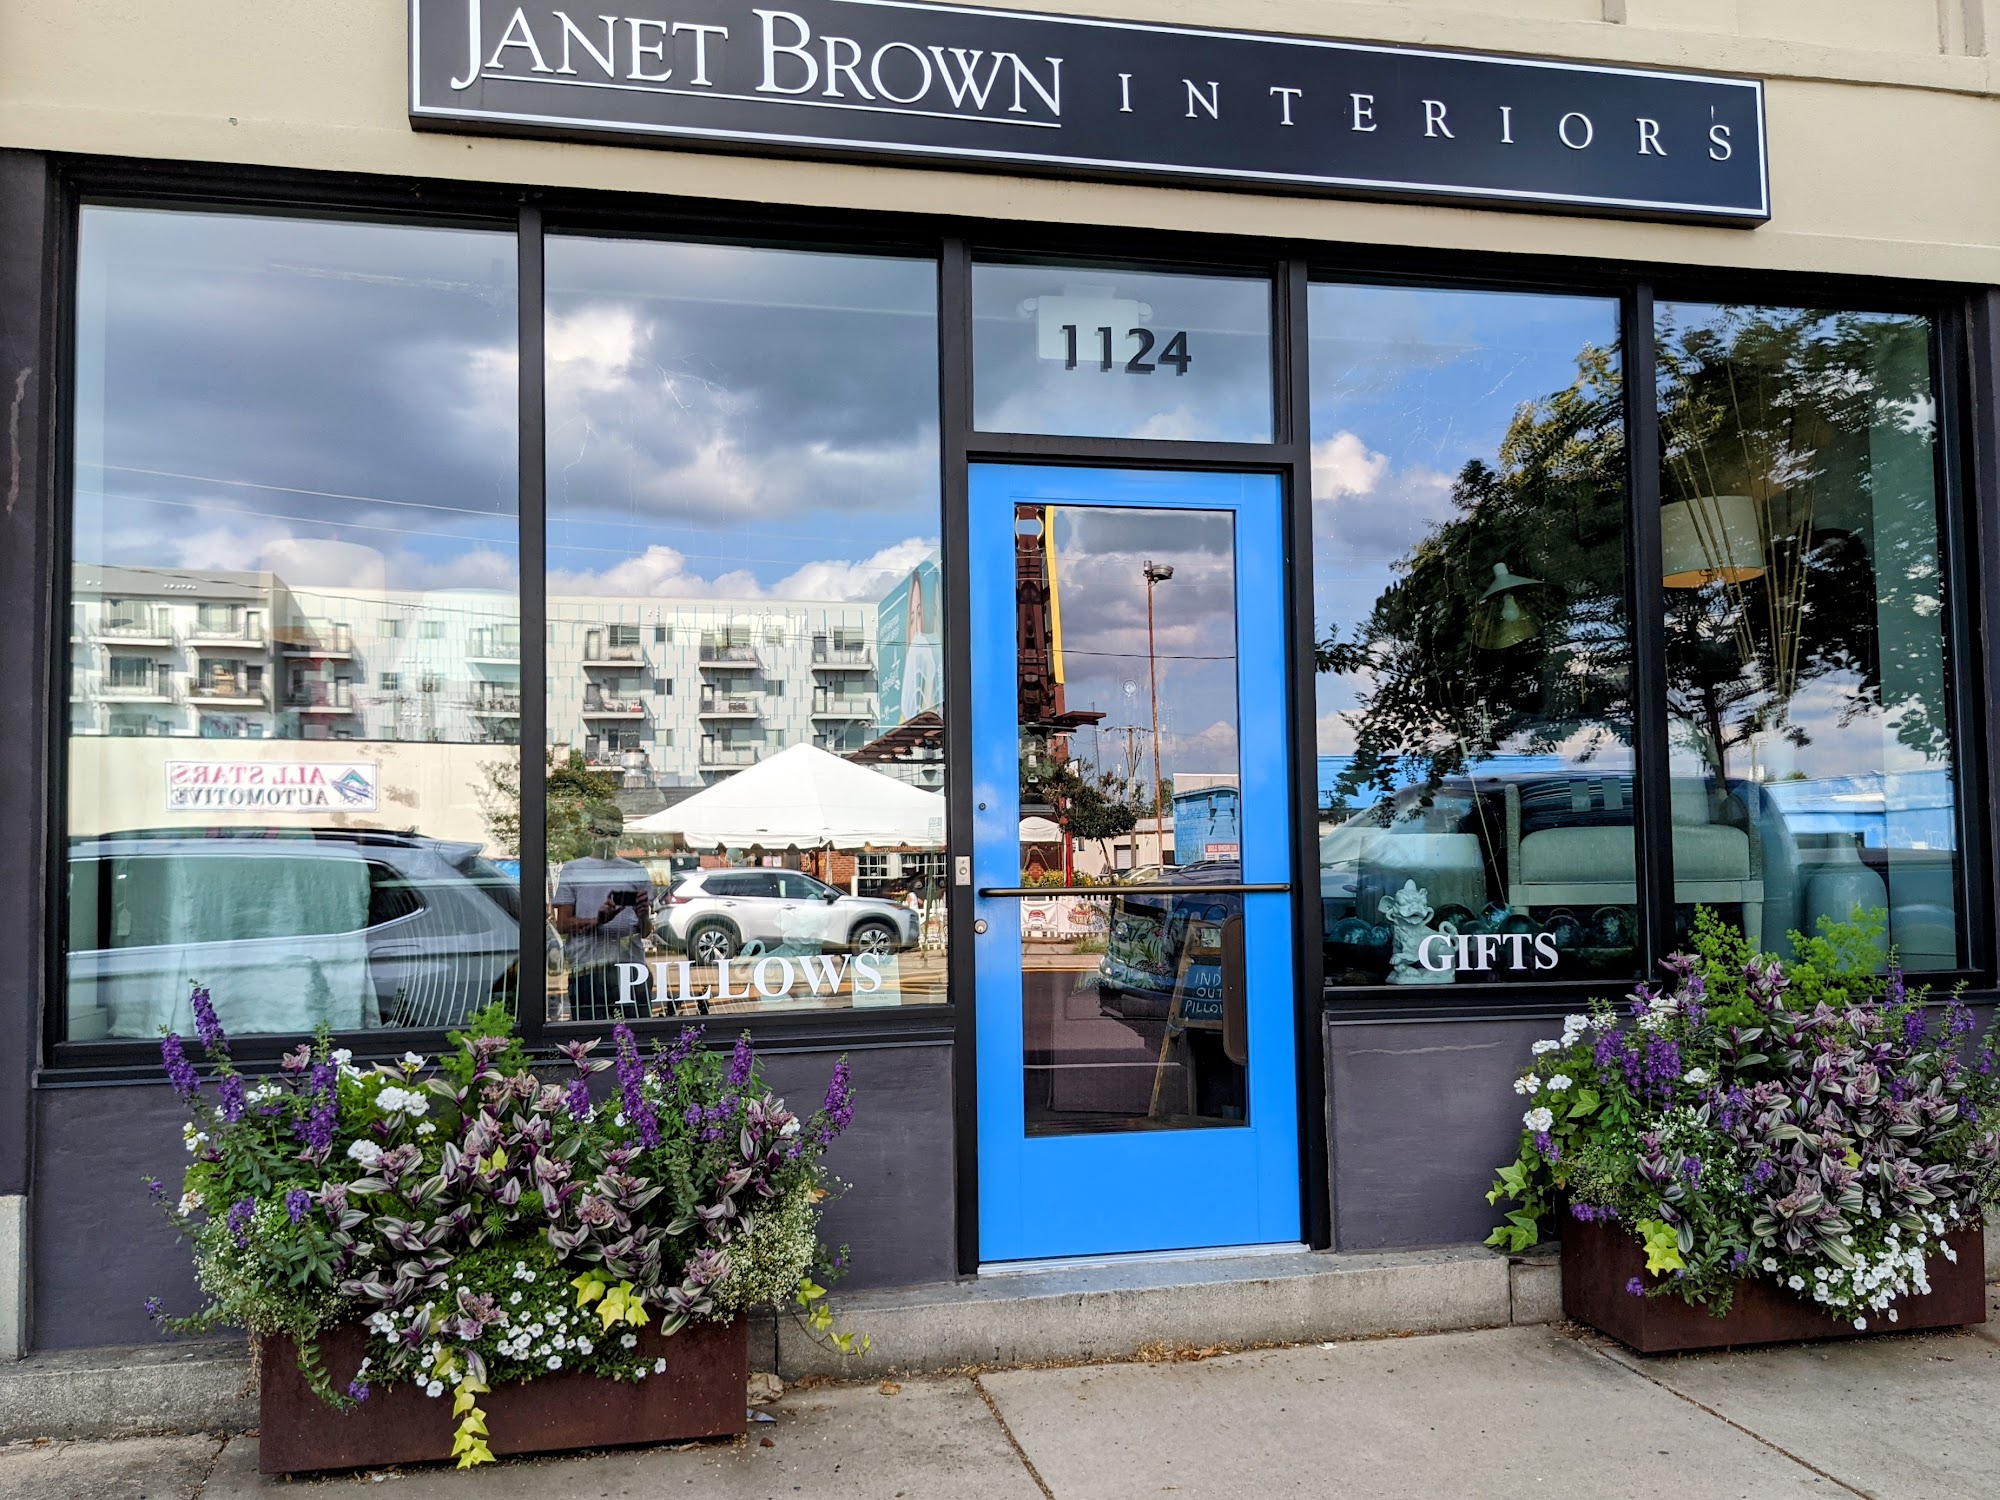 Janet Brown Interiors